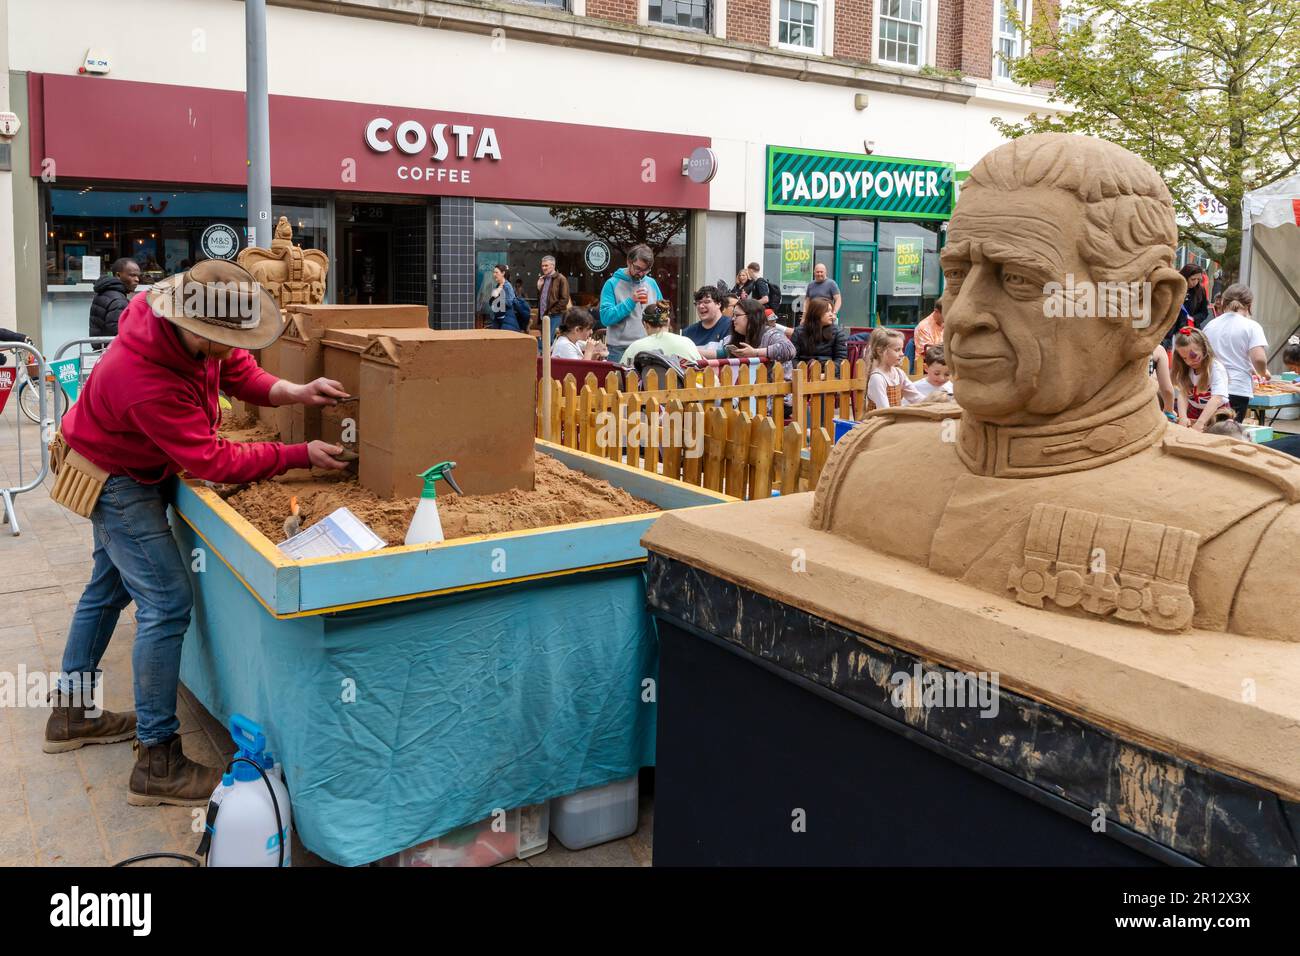 L'art du sable du roi Charles III dans le centre-ville de Kingston sur Hull, au Royaume-Uni, lors de son couronnement avec l'artiste vu sculpter derrière. Banque D'Images